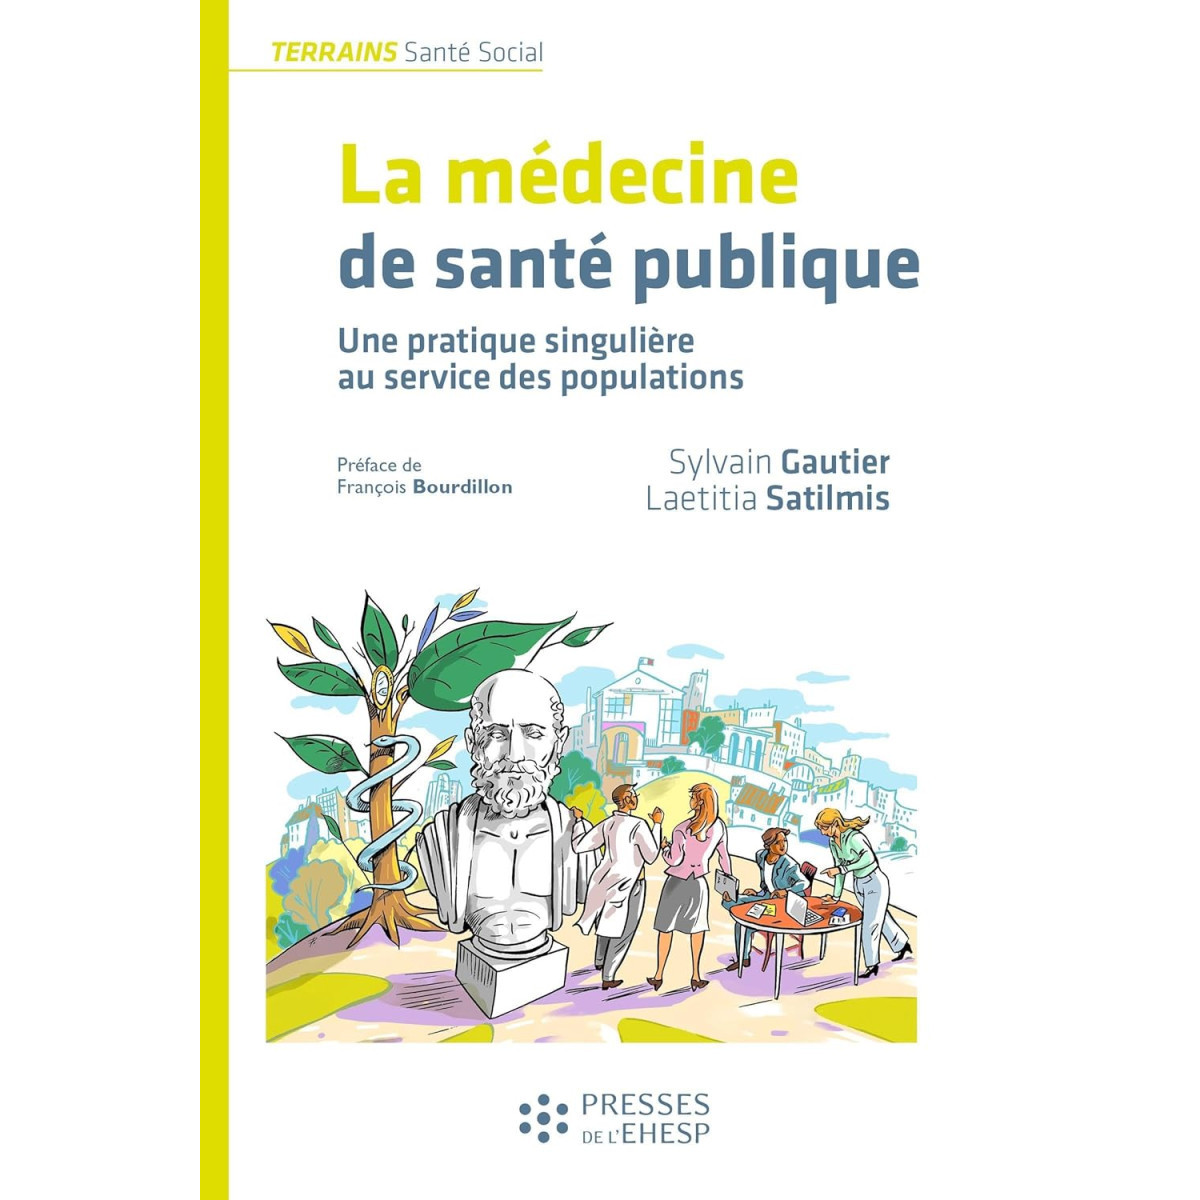 La médecine de santé publique: Une pratique singulière au service des populations